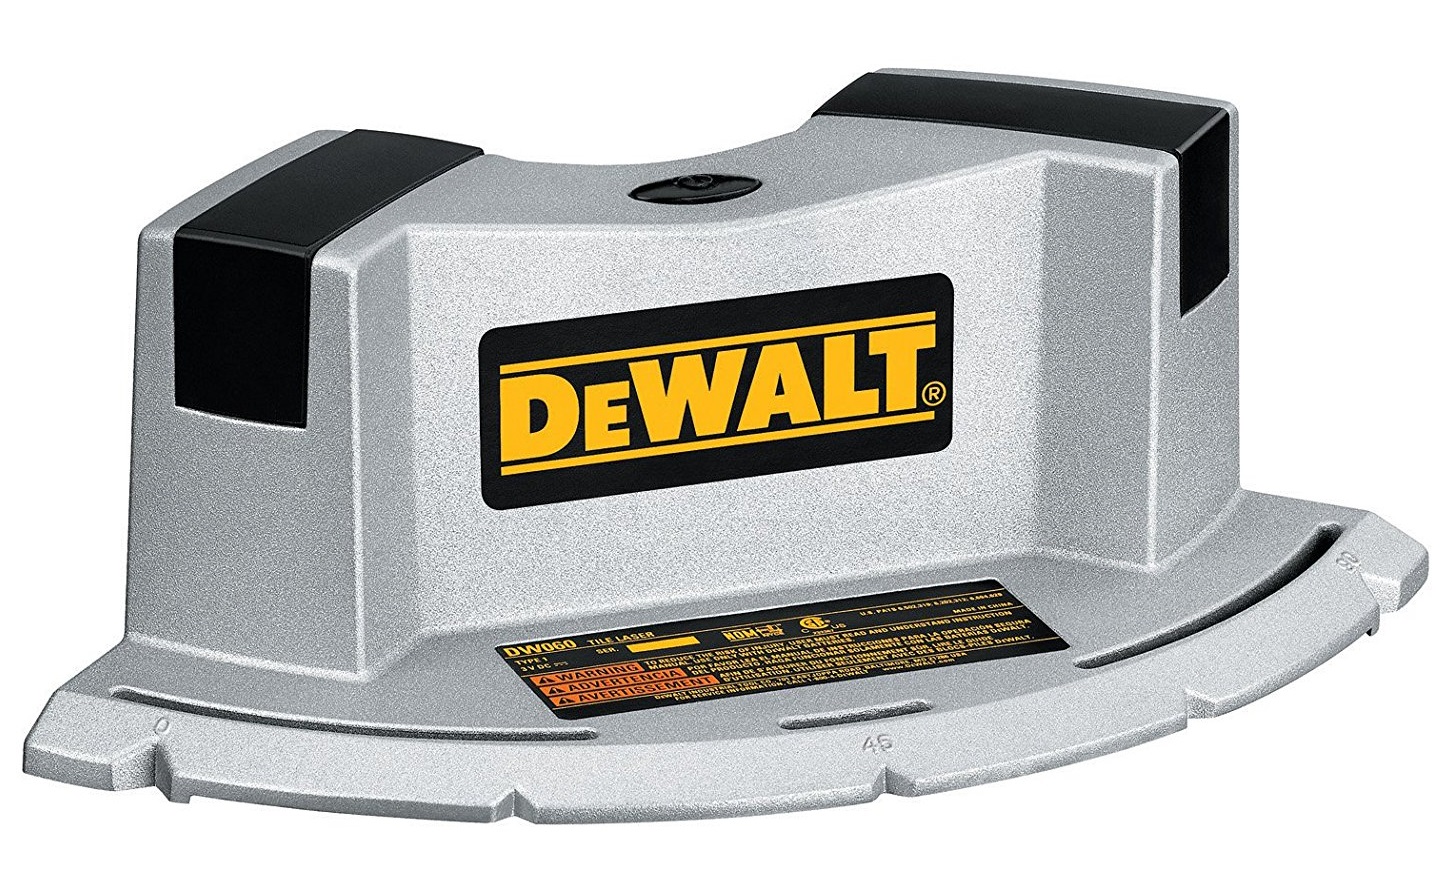  нивелир DeWalt DW060K,  по выгодной цене с доставкой по .